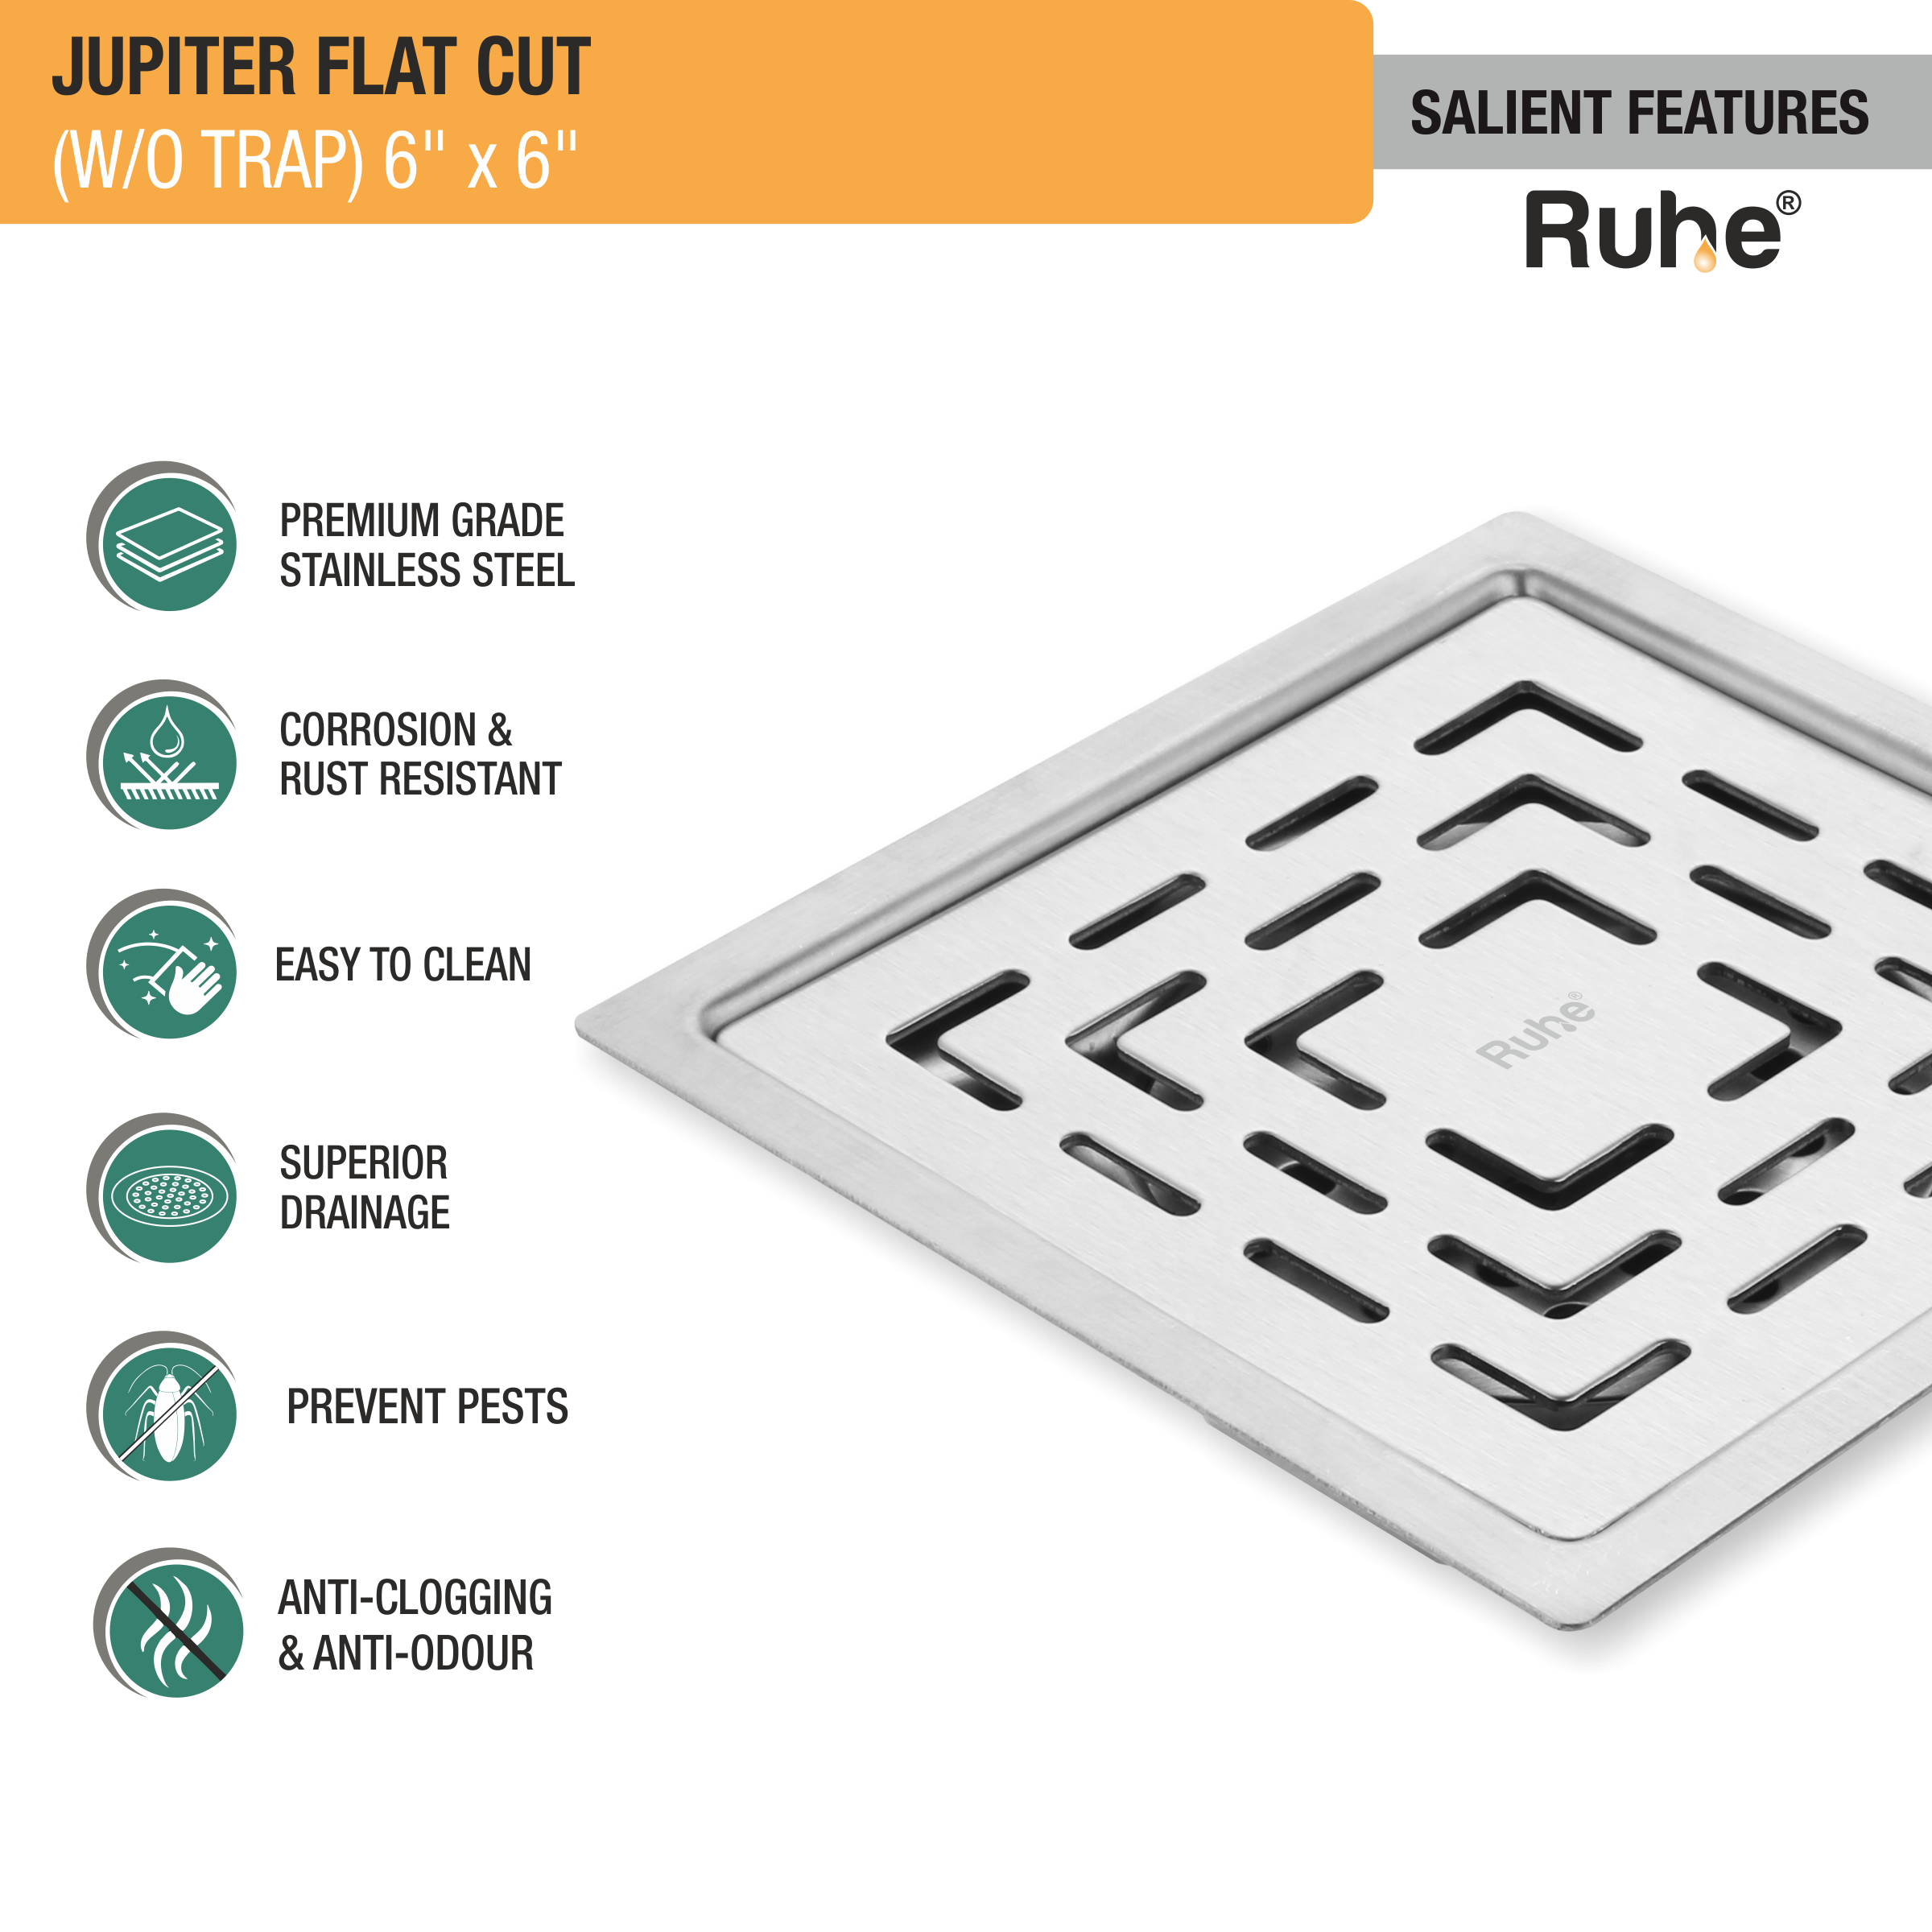 Jupiter Square Premium Flat Cut Floor Drain (6 x 6 Inches) features